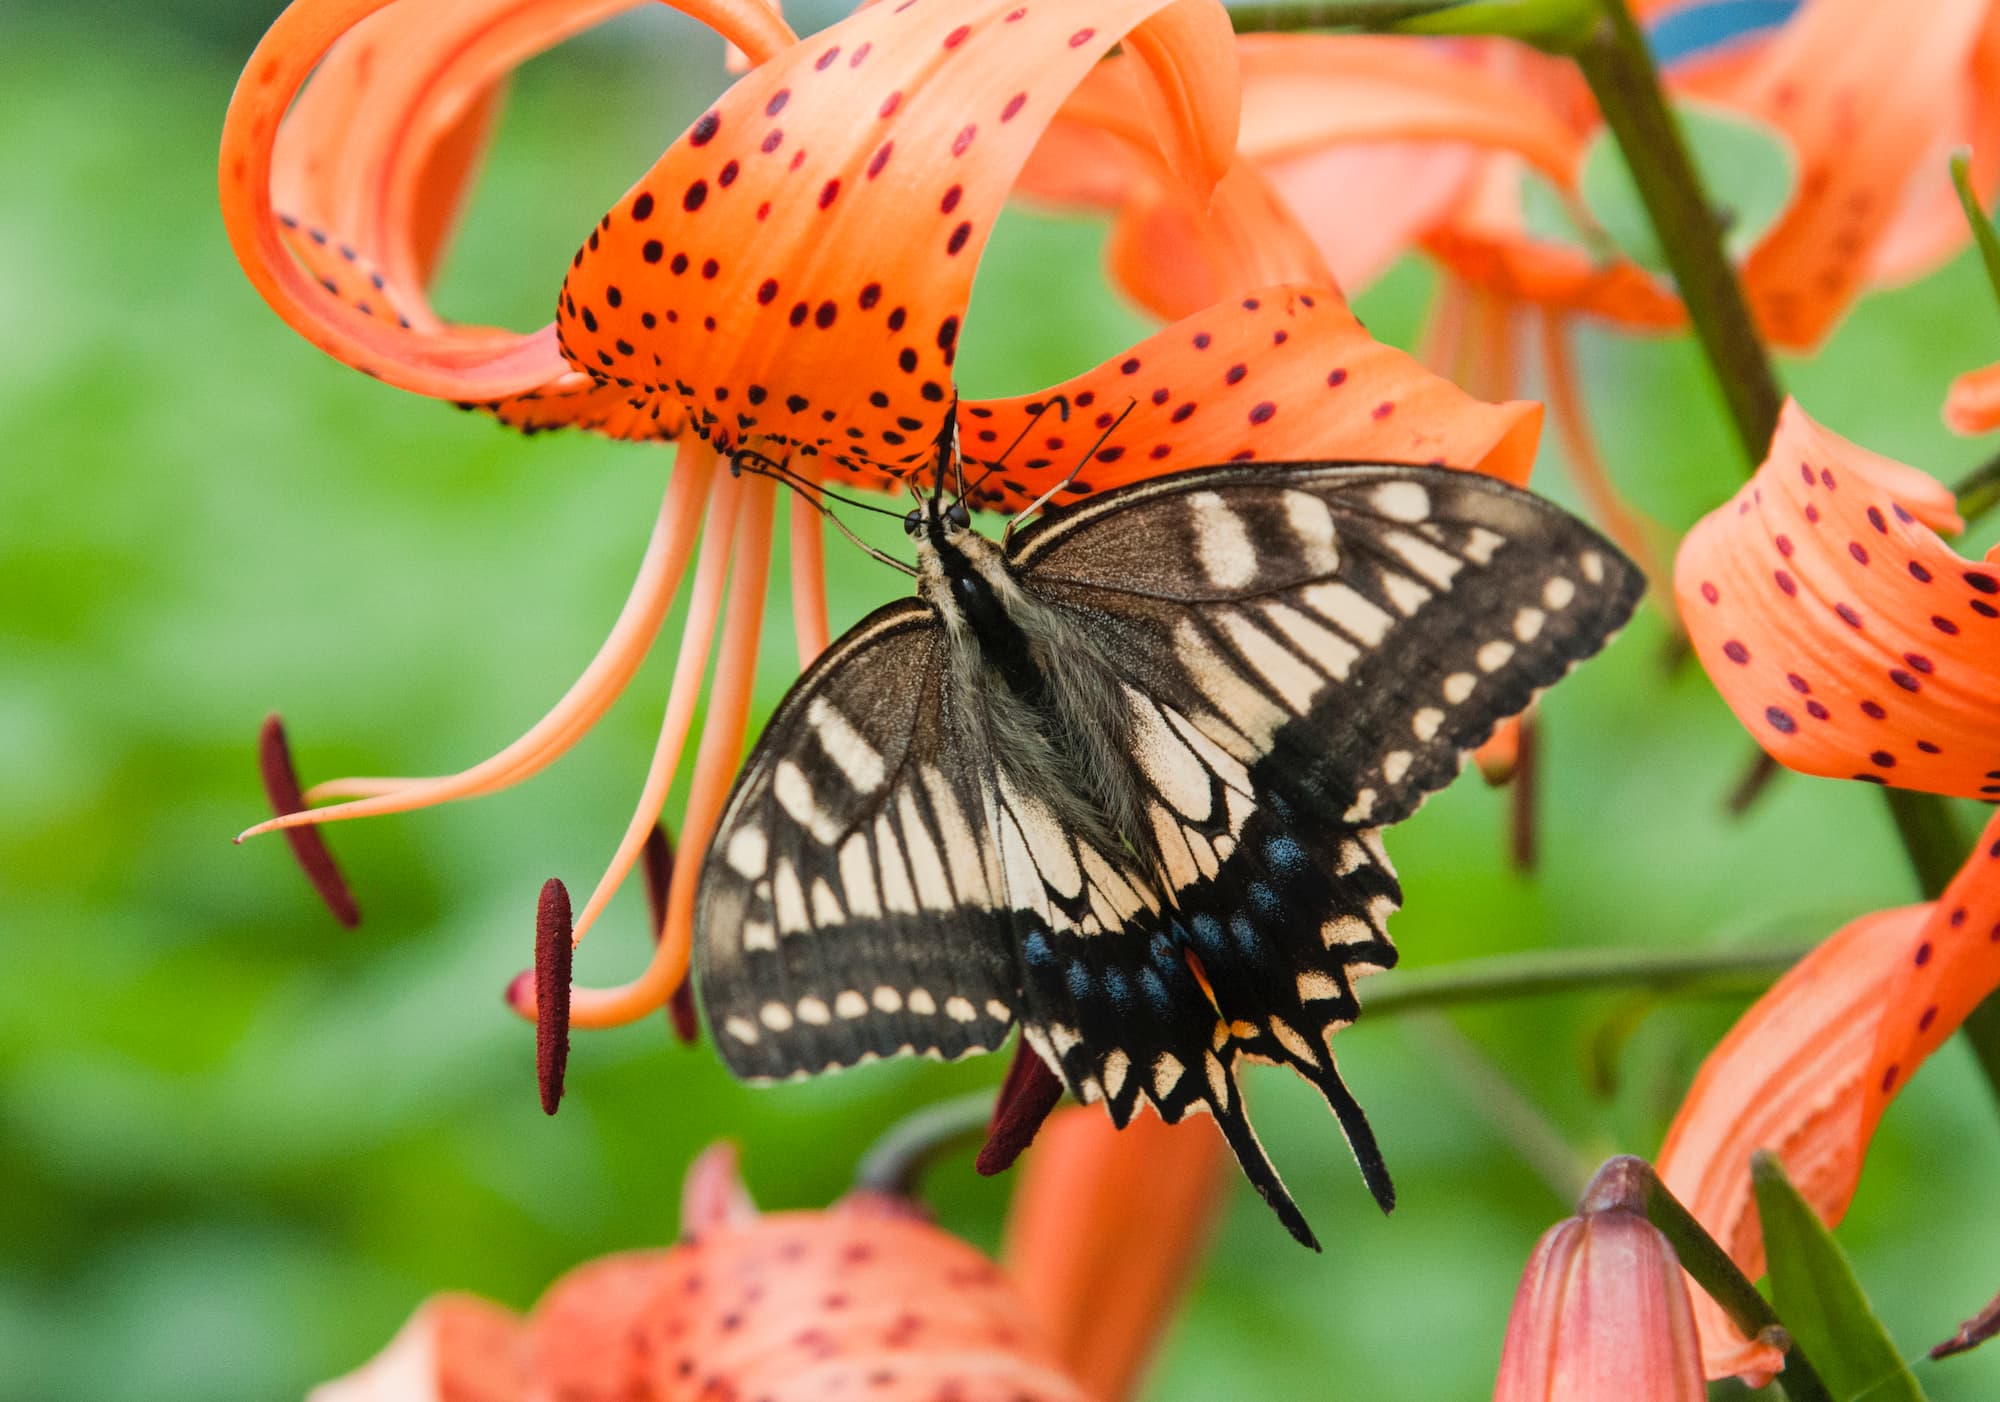 花にいろいろな色や形がある理由 プチペディア で迫る 昆虫 植物 動物のヒミツ アマナとひらく 自然 科学 のトビラ Nature Science